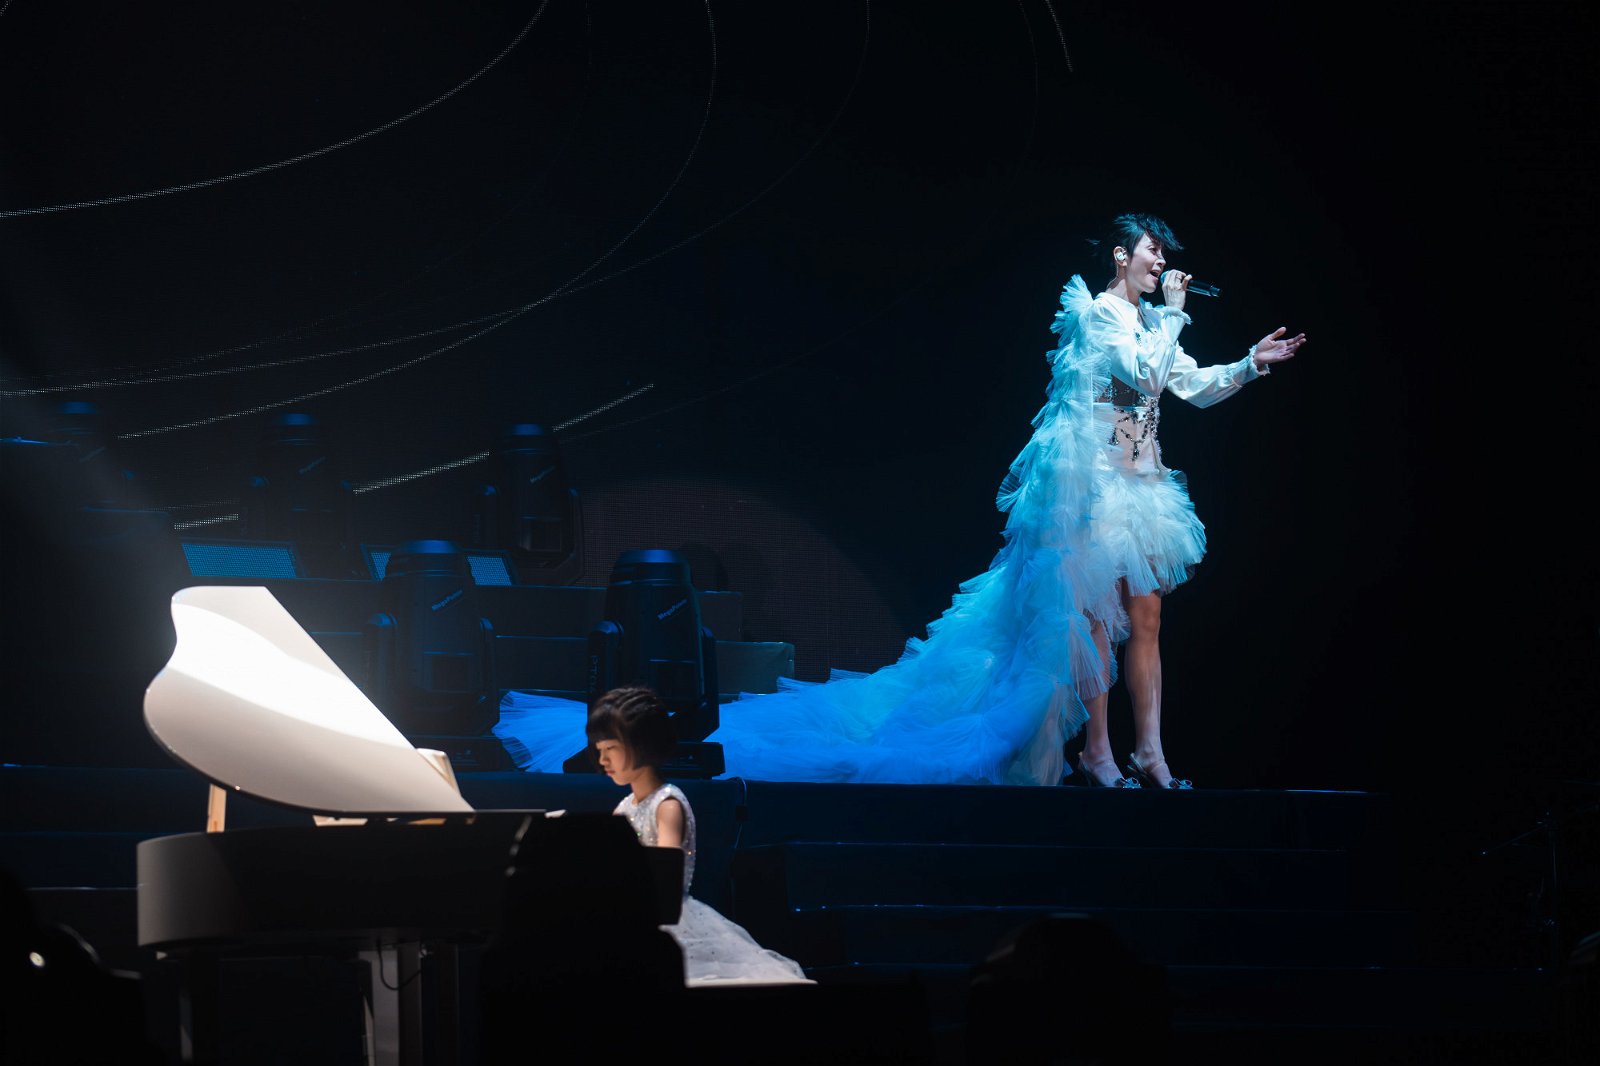 梁咏琪的小小钢琴师是马来西亚8岁的小朋友彤彤，两人合唱《爱的代价》后，梁咏琪还狂赞对方表现很好。